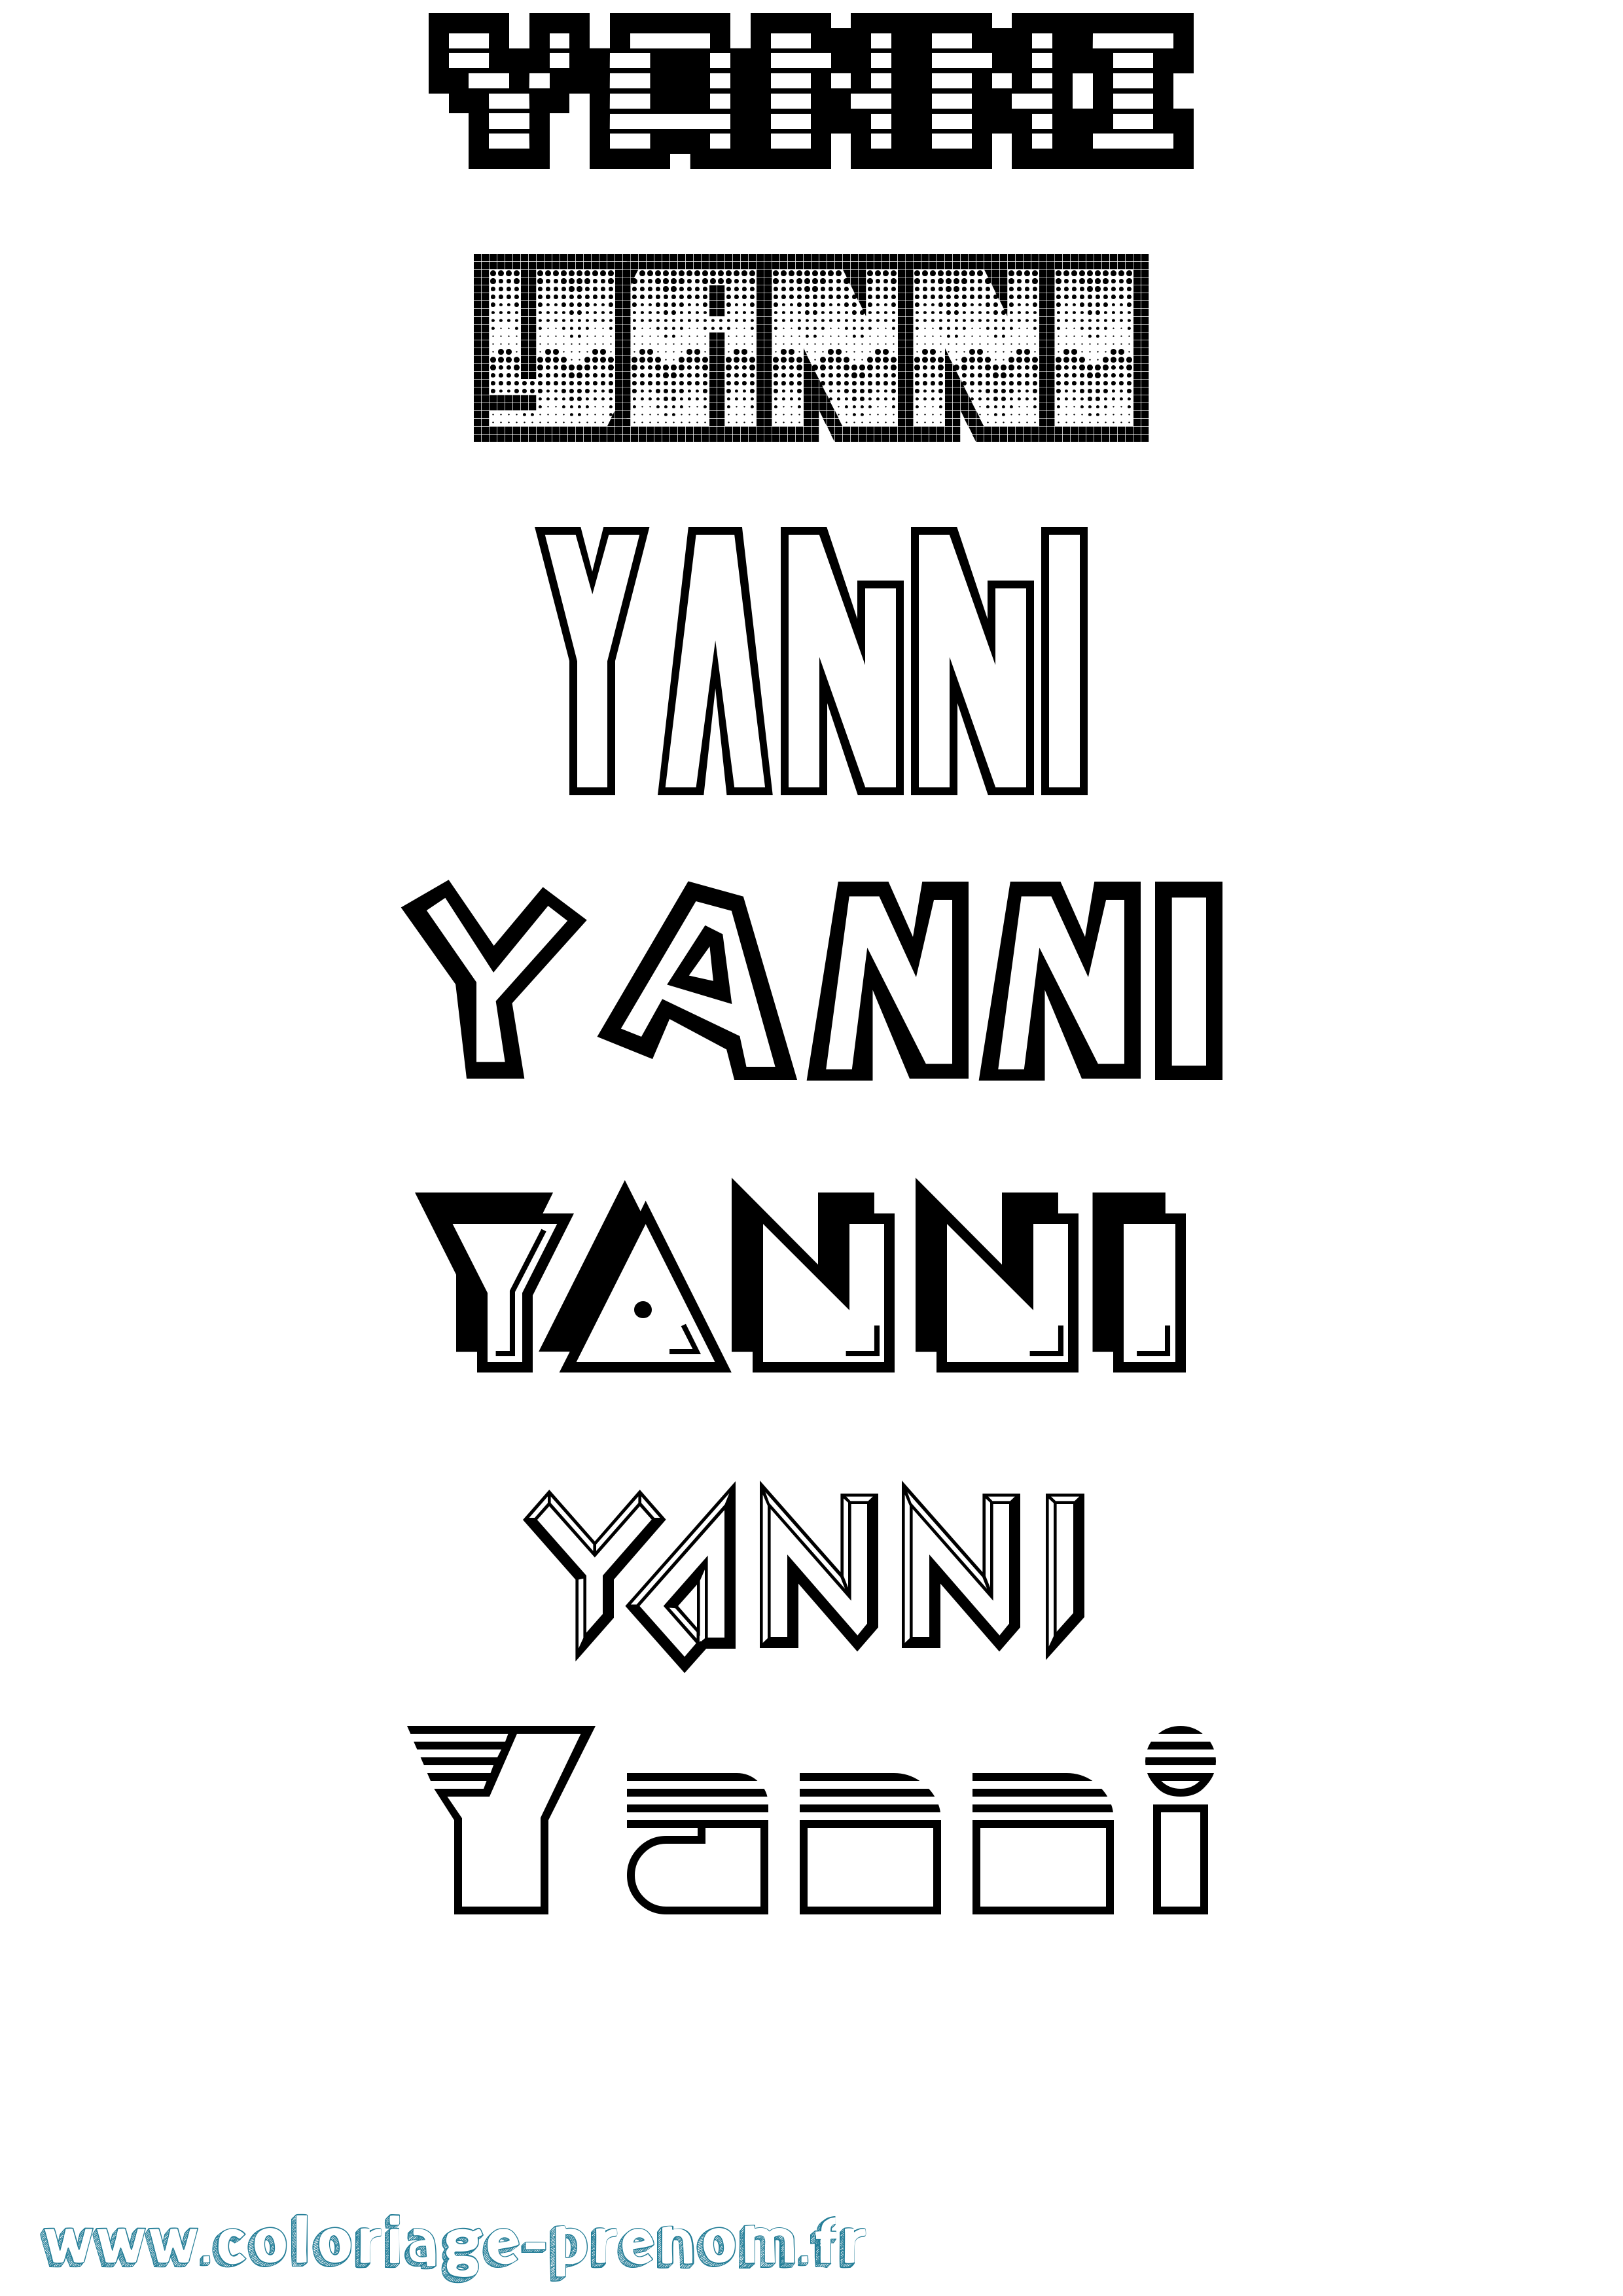 Coloriage prénom Yanni